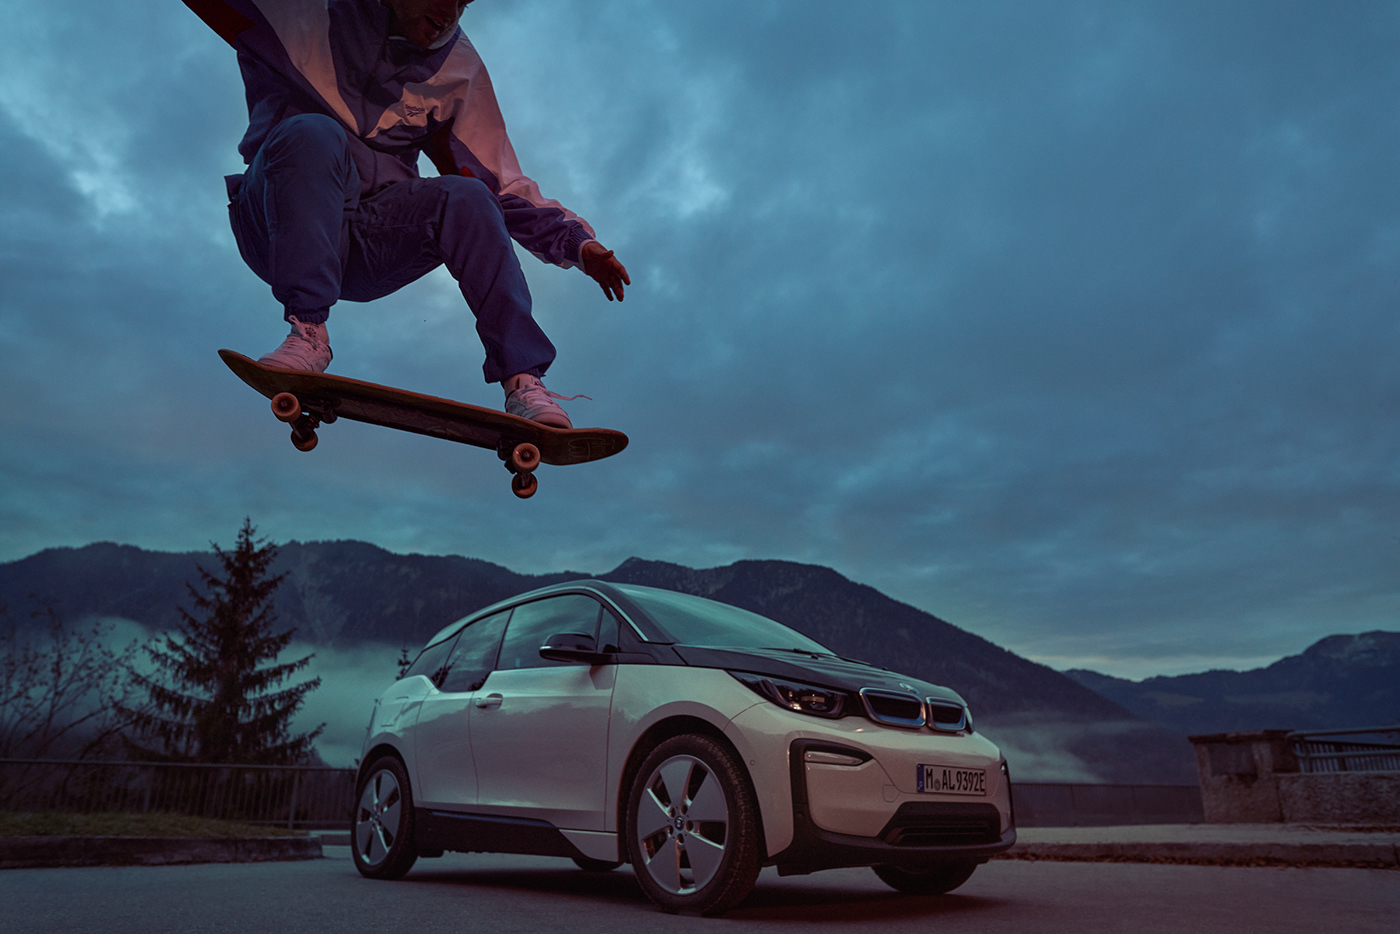 action Advertising  Auto automotive   car editorial Landscape portrait skateboarding sport